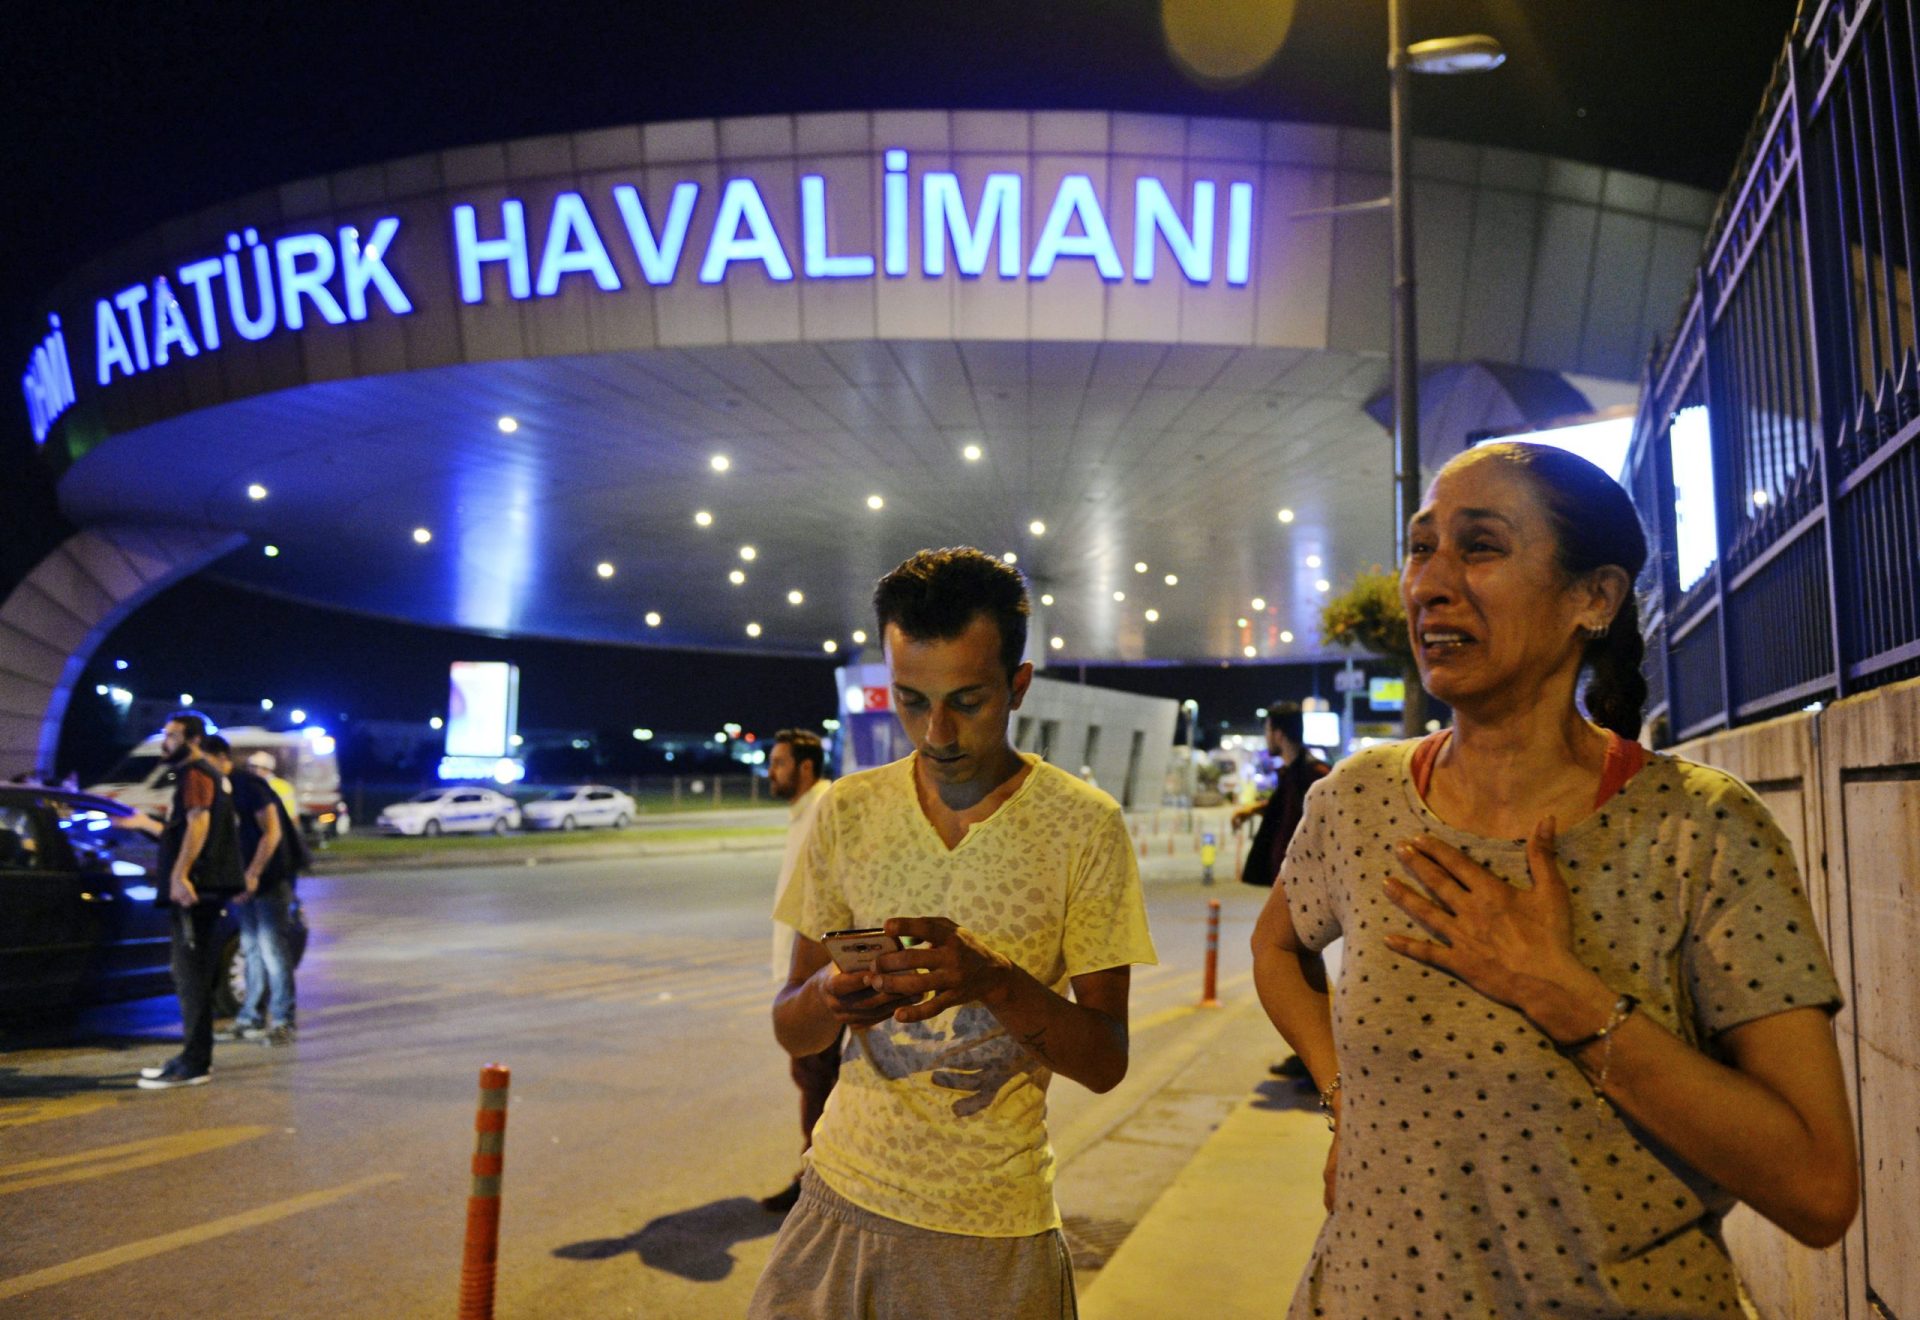 Ataque no aeroporto de Istambul foi levado a cabo pelo Estado Islâmico, diz primeiro-ministro turco